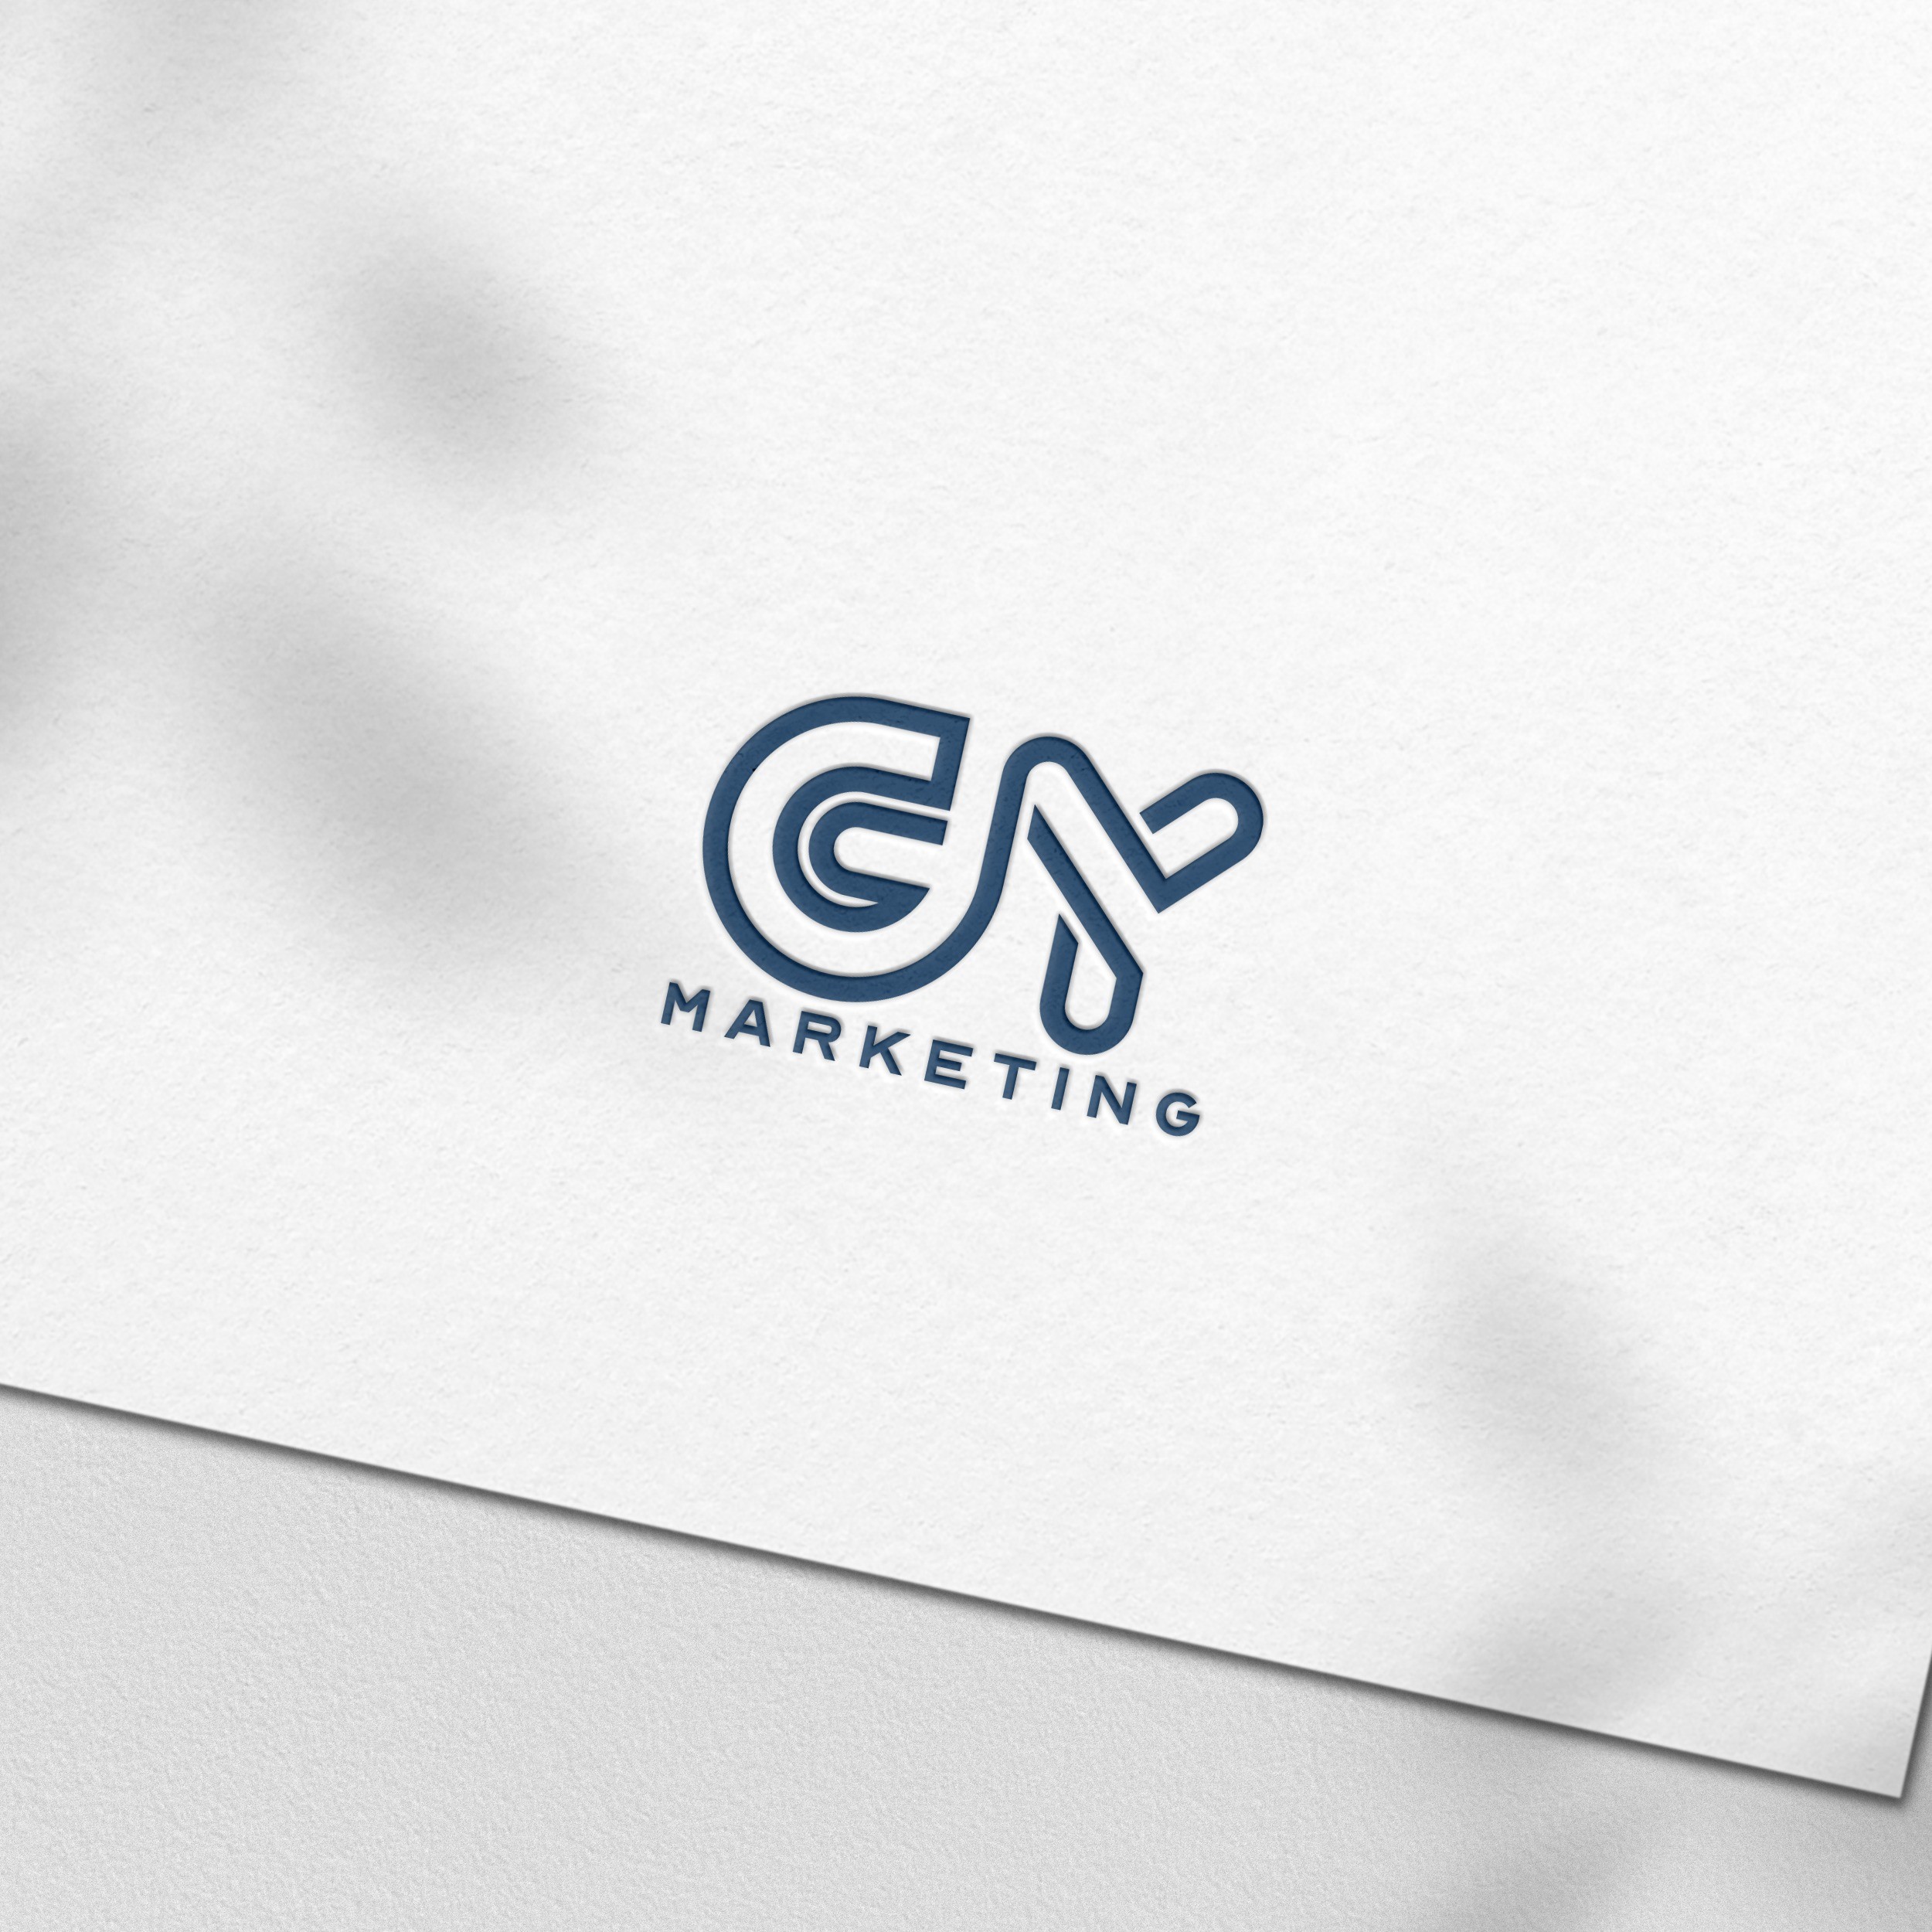 포트폴리오-GY 마케팅 로고